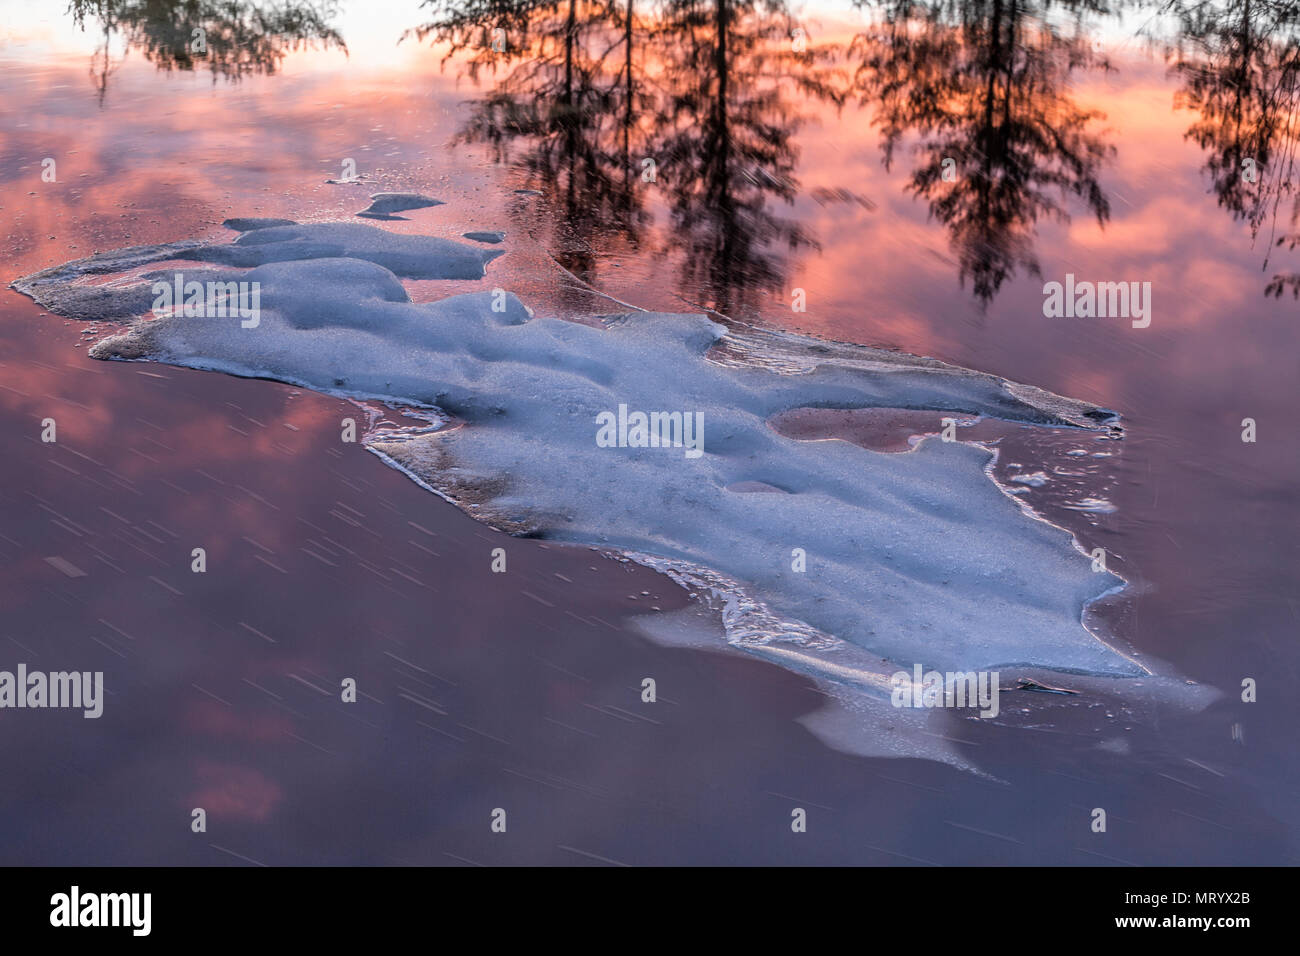 Ice et réflexions de coucher du soleil dans des milieux humides, Sudbury, Ontario Banque D'Images